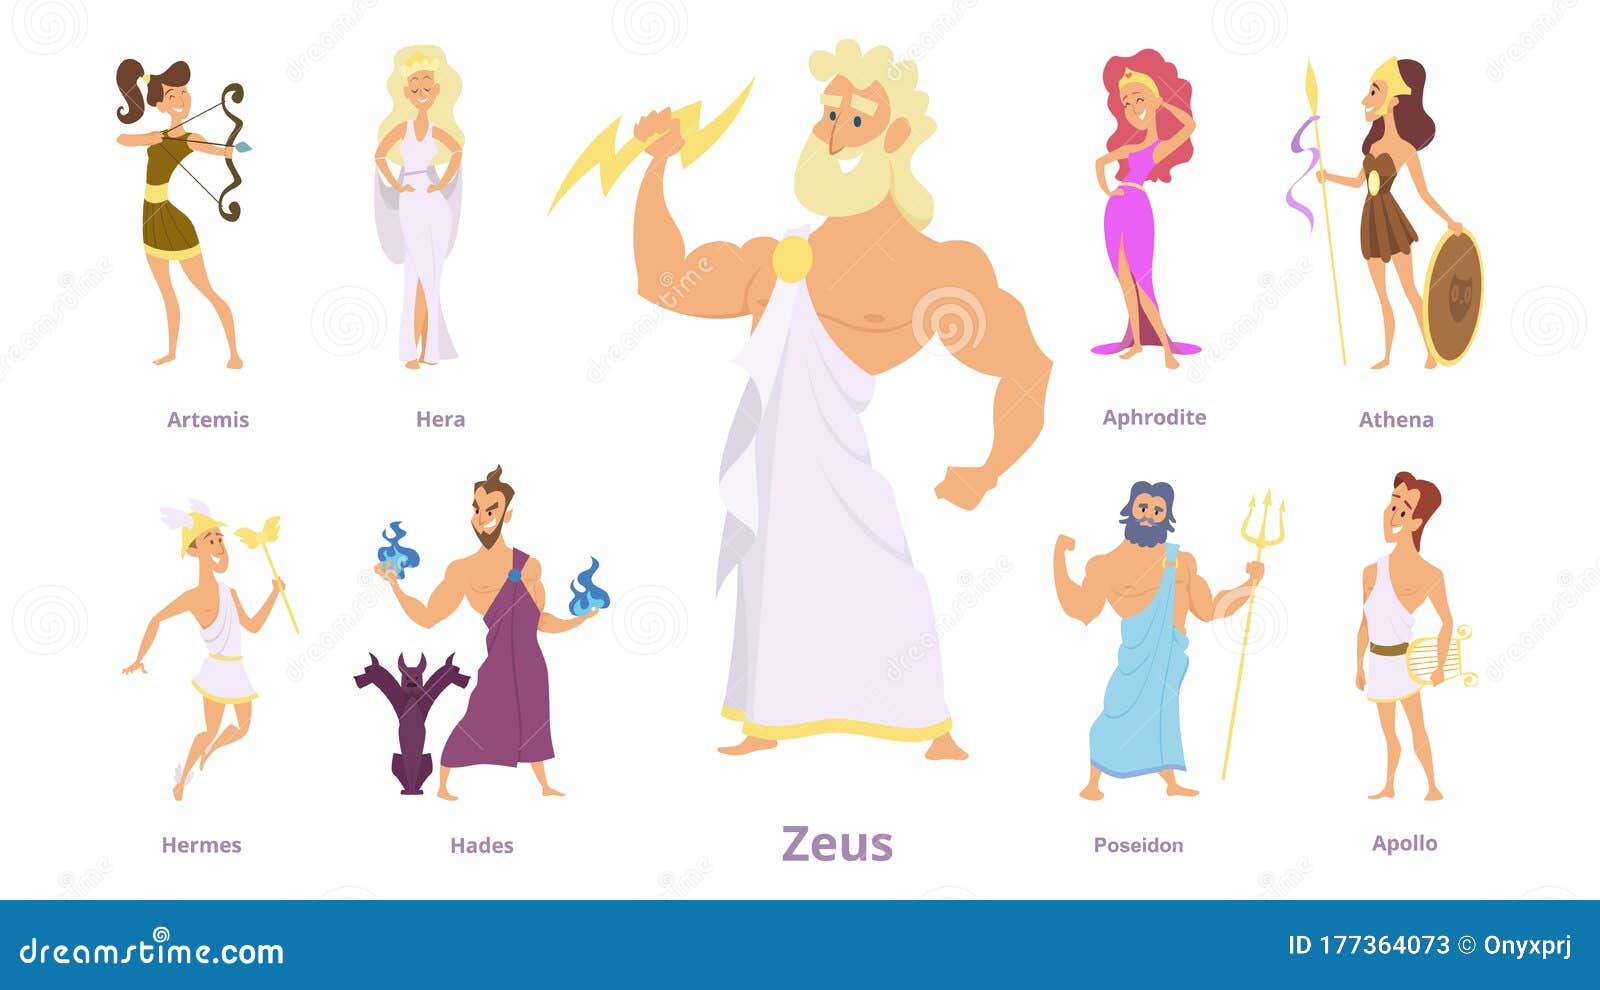 Zeus, Athena, Poseidon Character. 